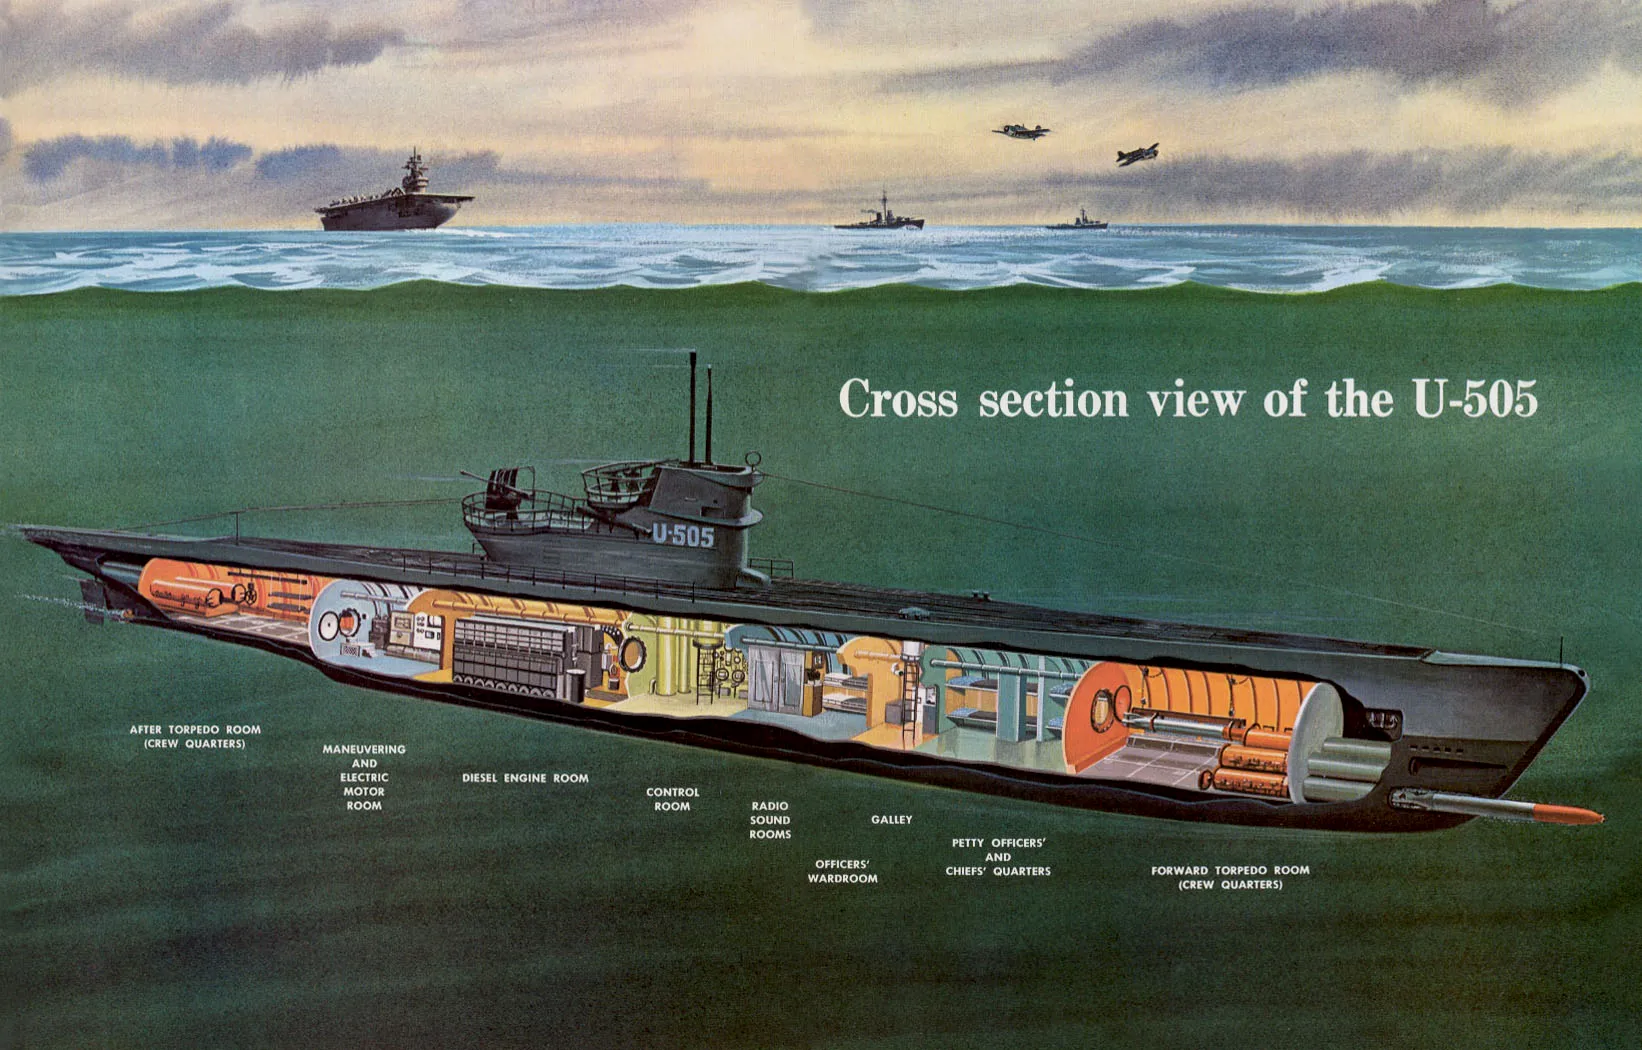 电影《U-571》讲述了美军夺取U艇密码机的故事，实际上是基于U-505捕获行动的（大致基于）